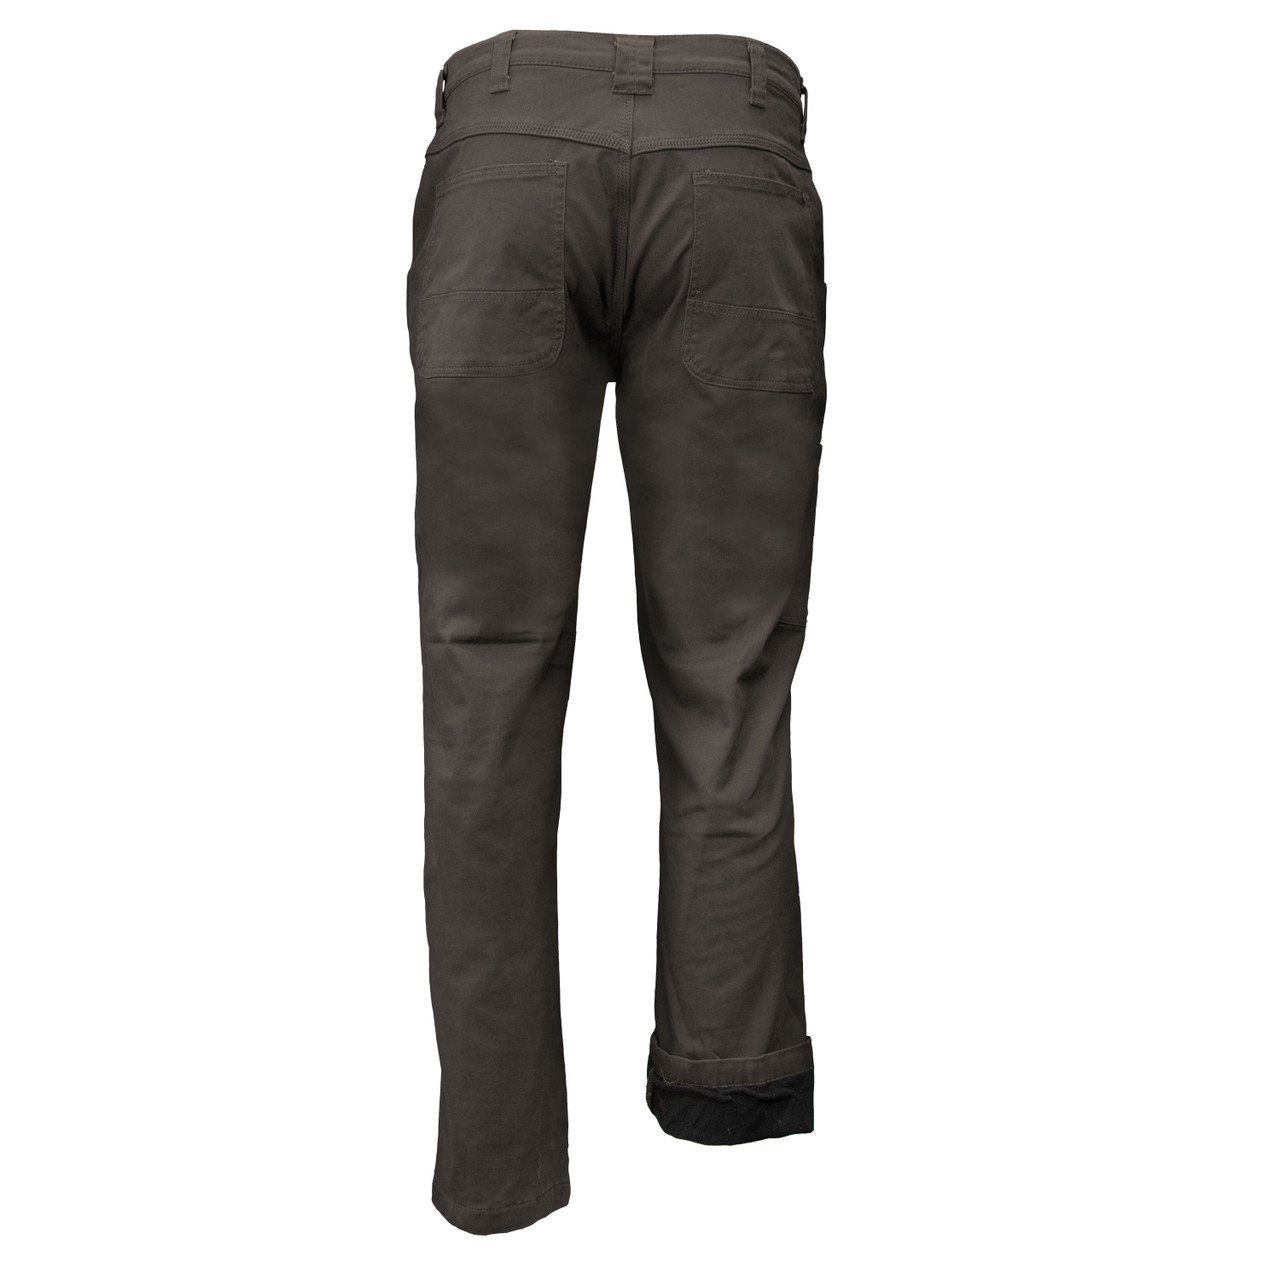 Buy Polar Fleece Lined Cargo Jean Men's Jeans & Pants from Buyers